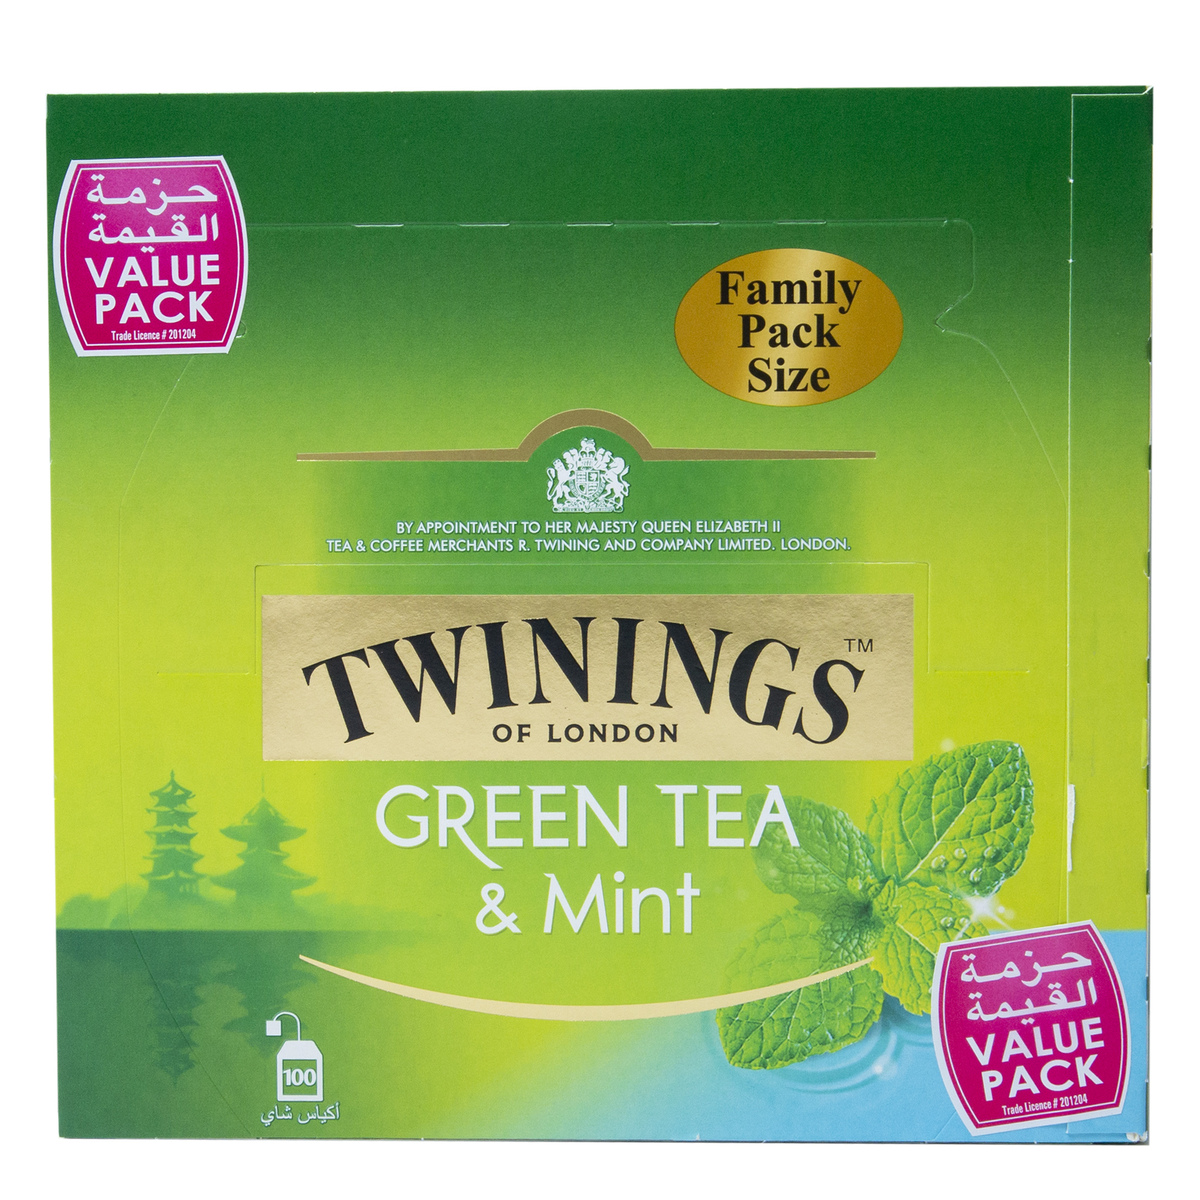 Twinings Green Tea Assorted 100 Teabags price in UAE | LuLu UAE ...